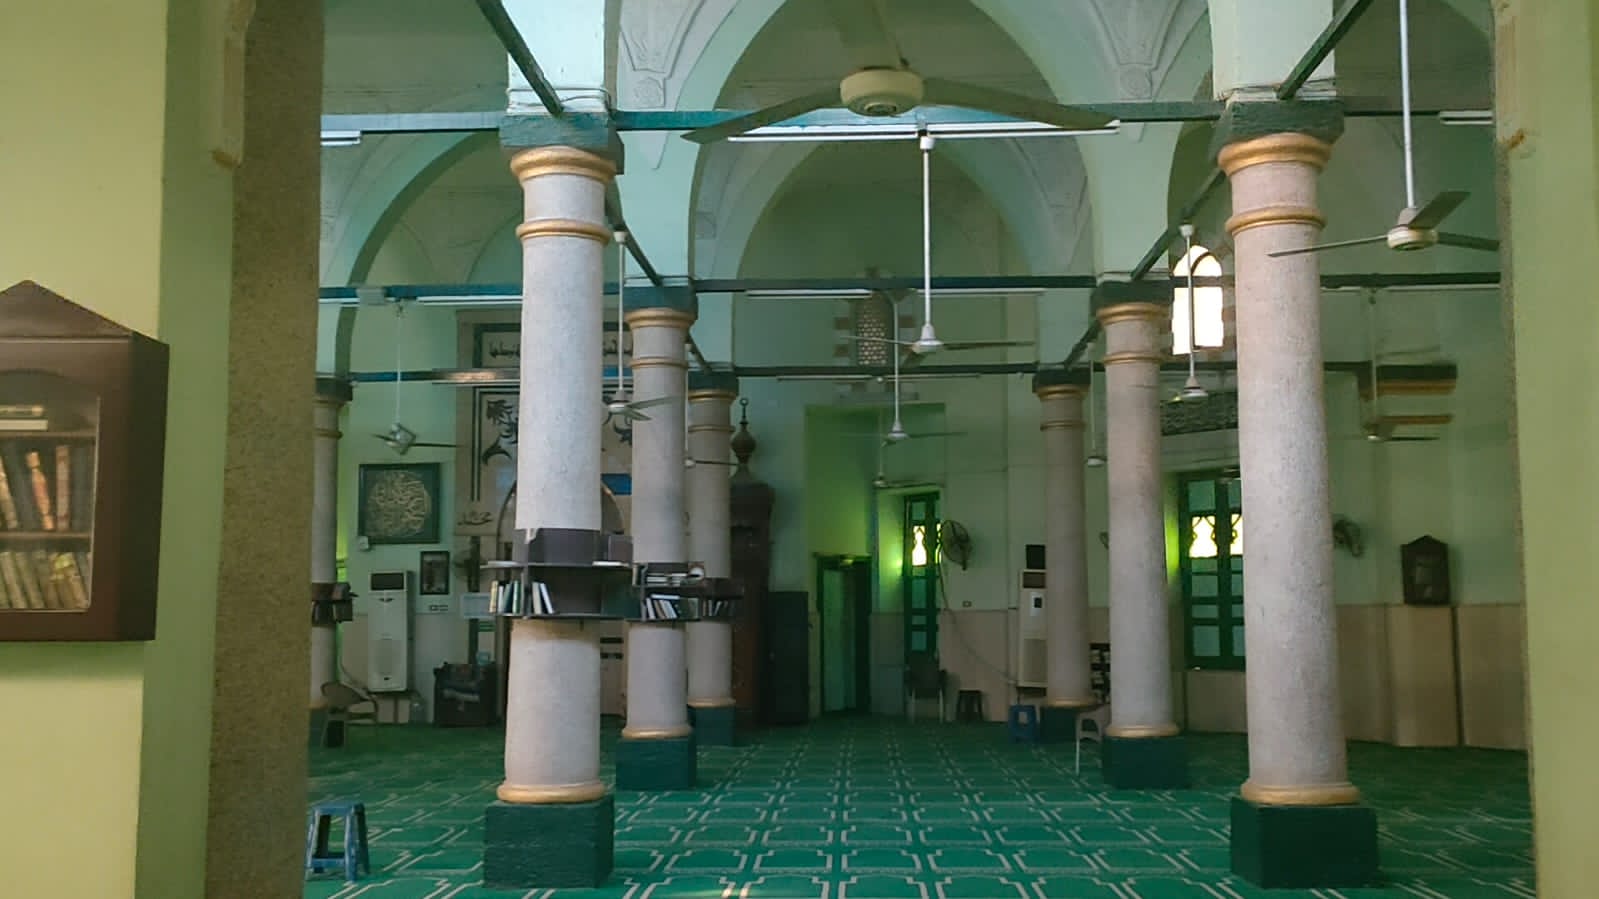 المسجد الأموى بمحافظة أسيوط